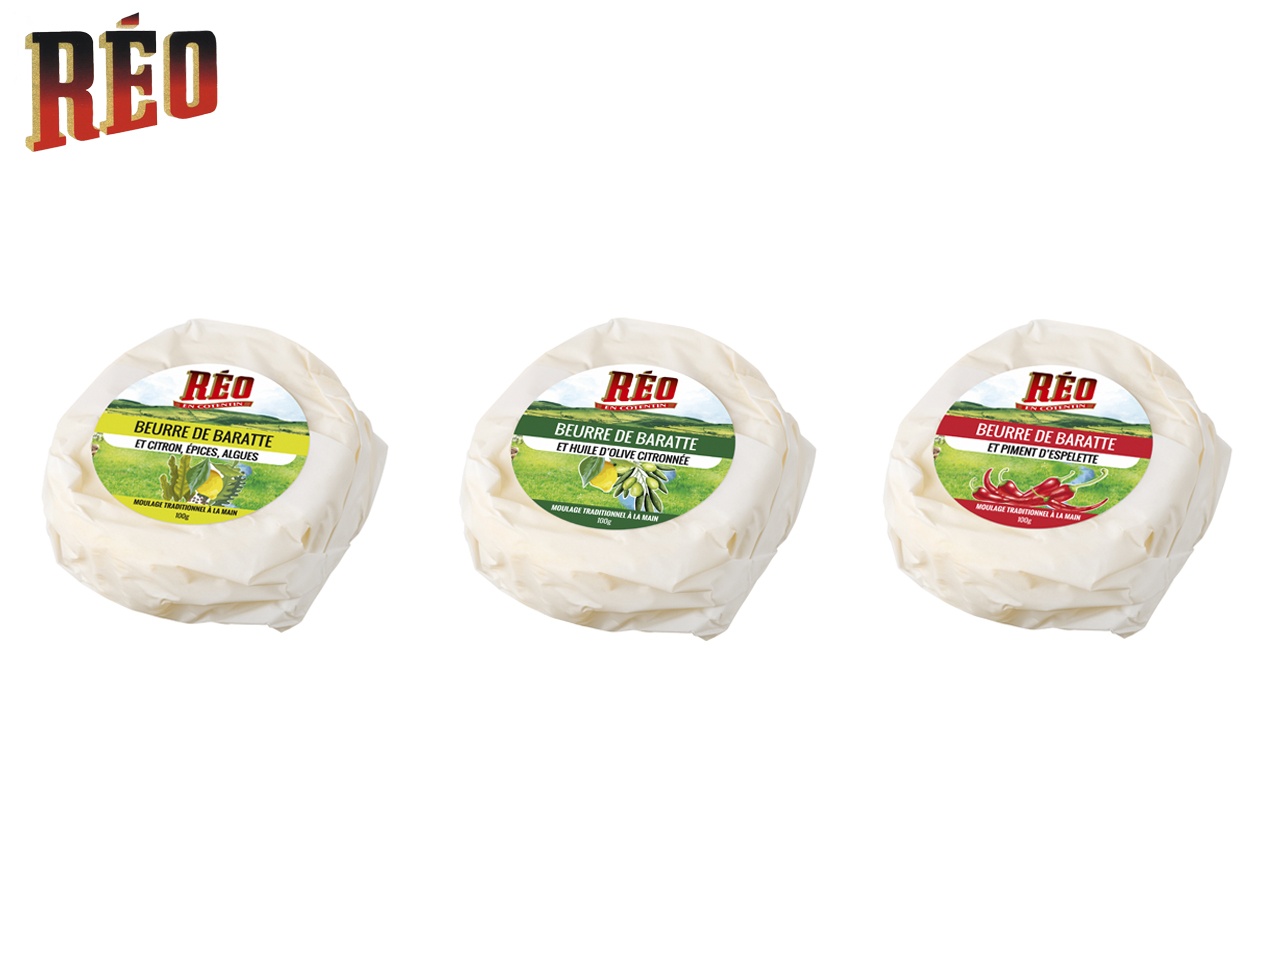 Réo lance une nouvelle gamme de 3 beurres aromatisés premium